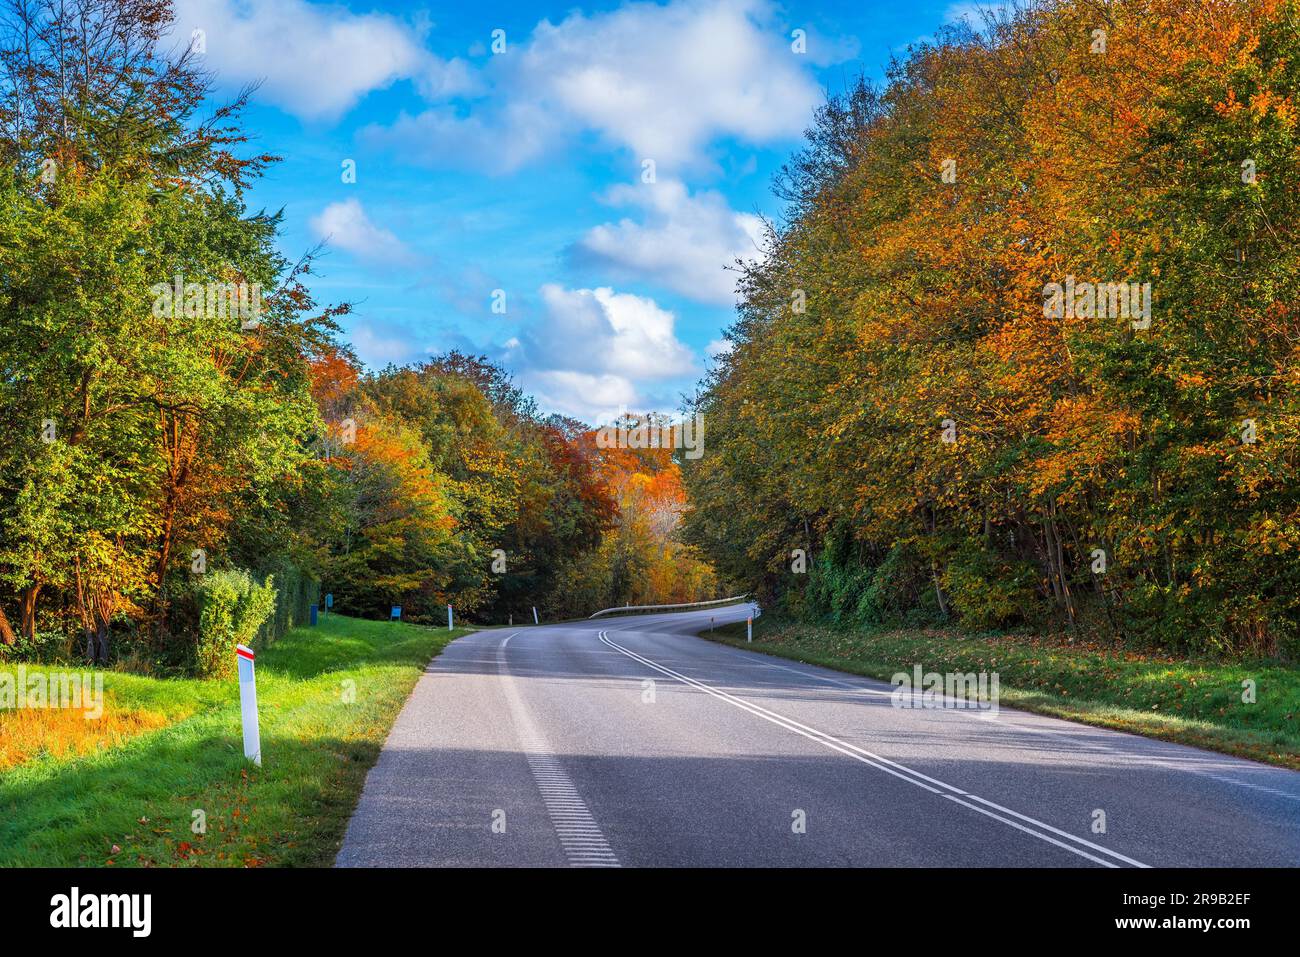 Carretera con una curva rodeado por árboles en otoño Foto de stock